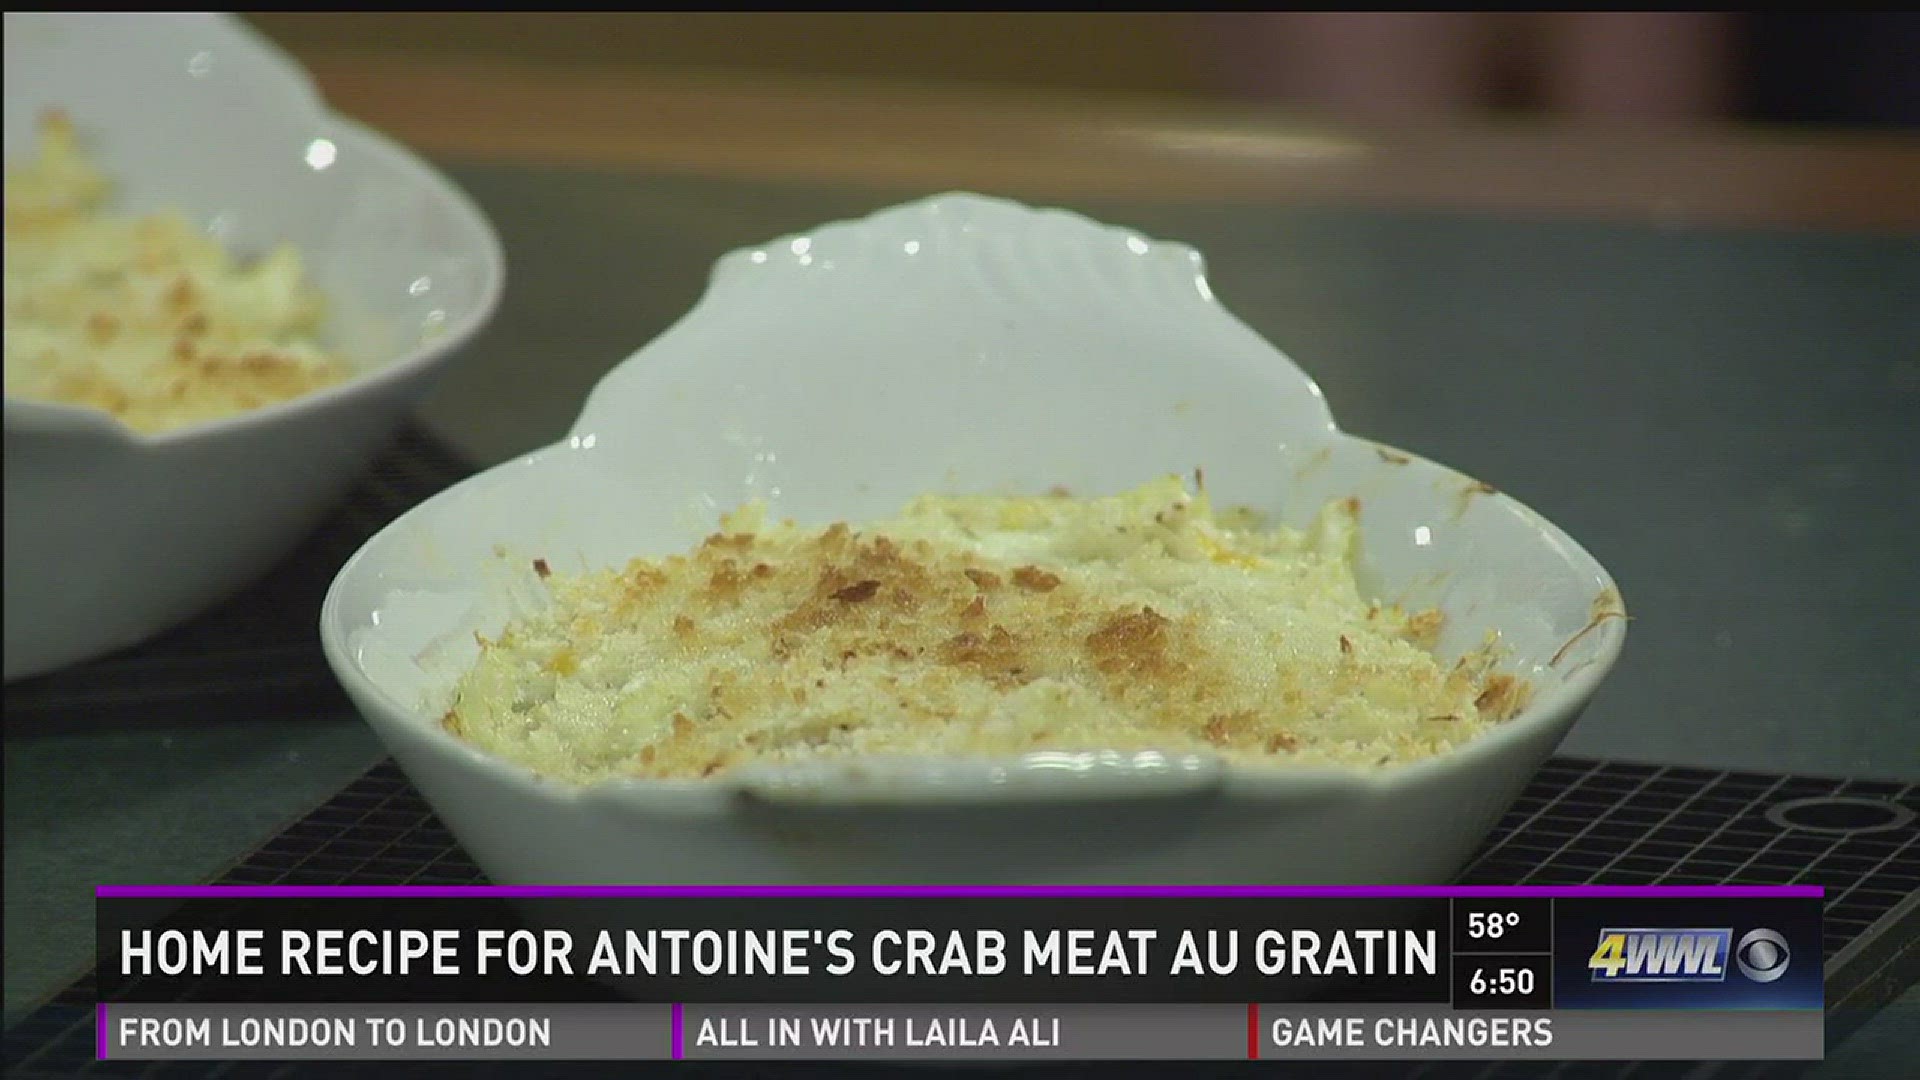 Antoine's crab meat au gratin recipe